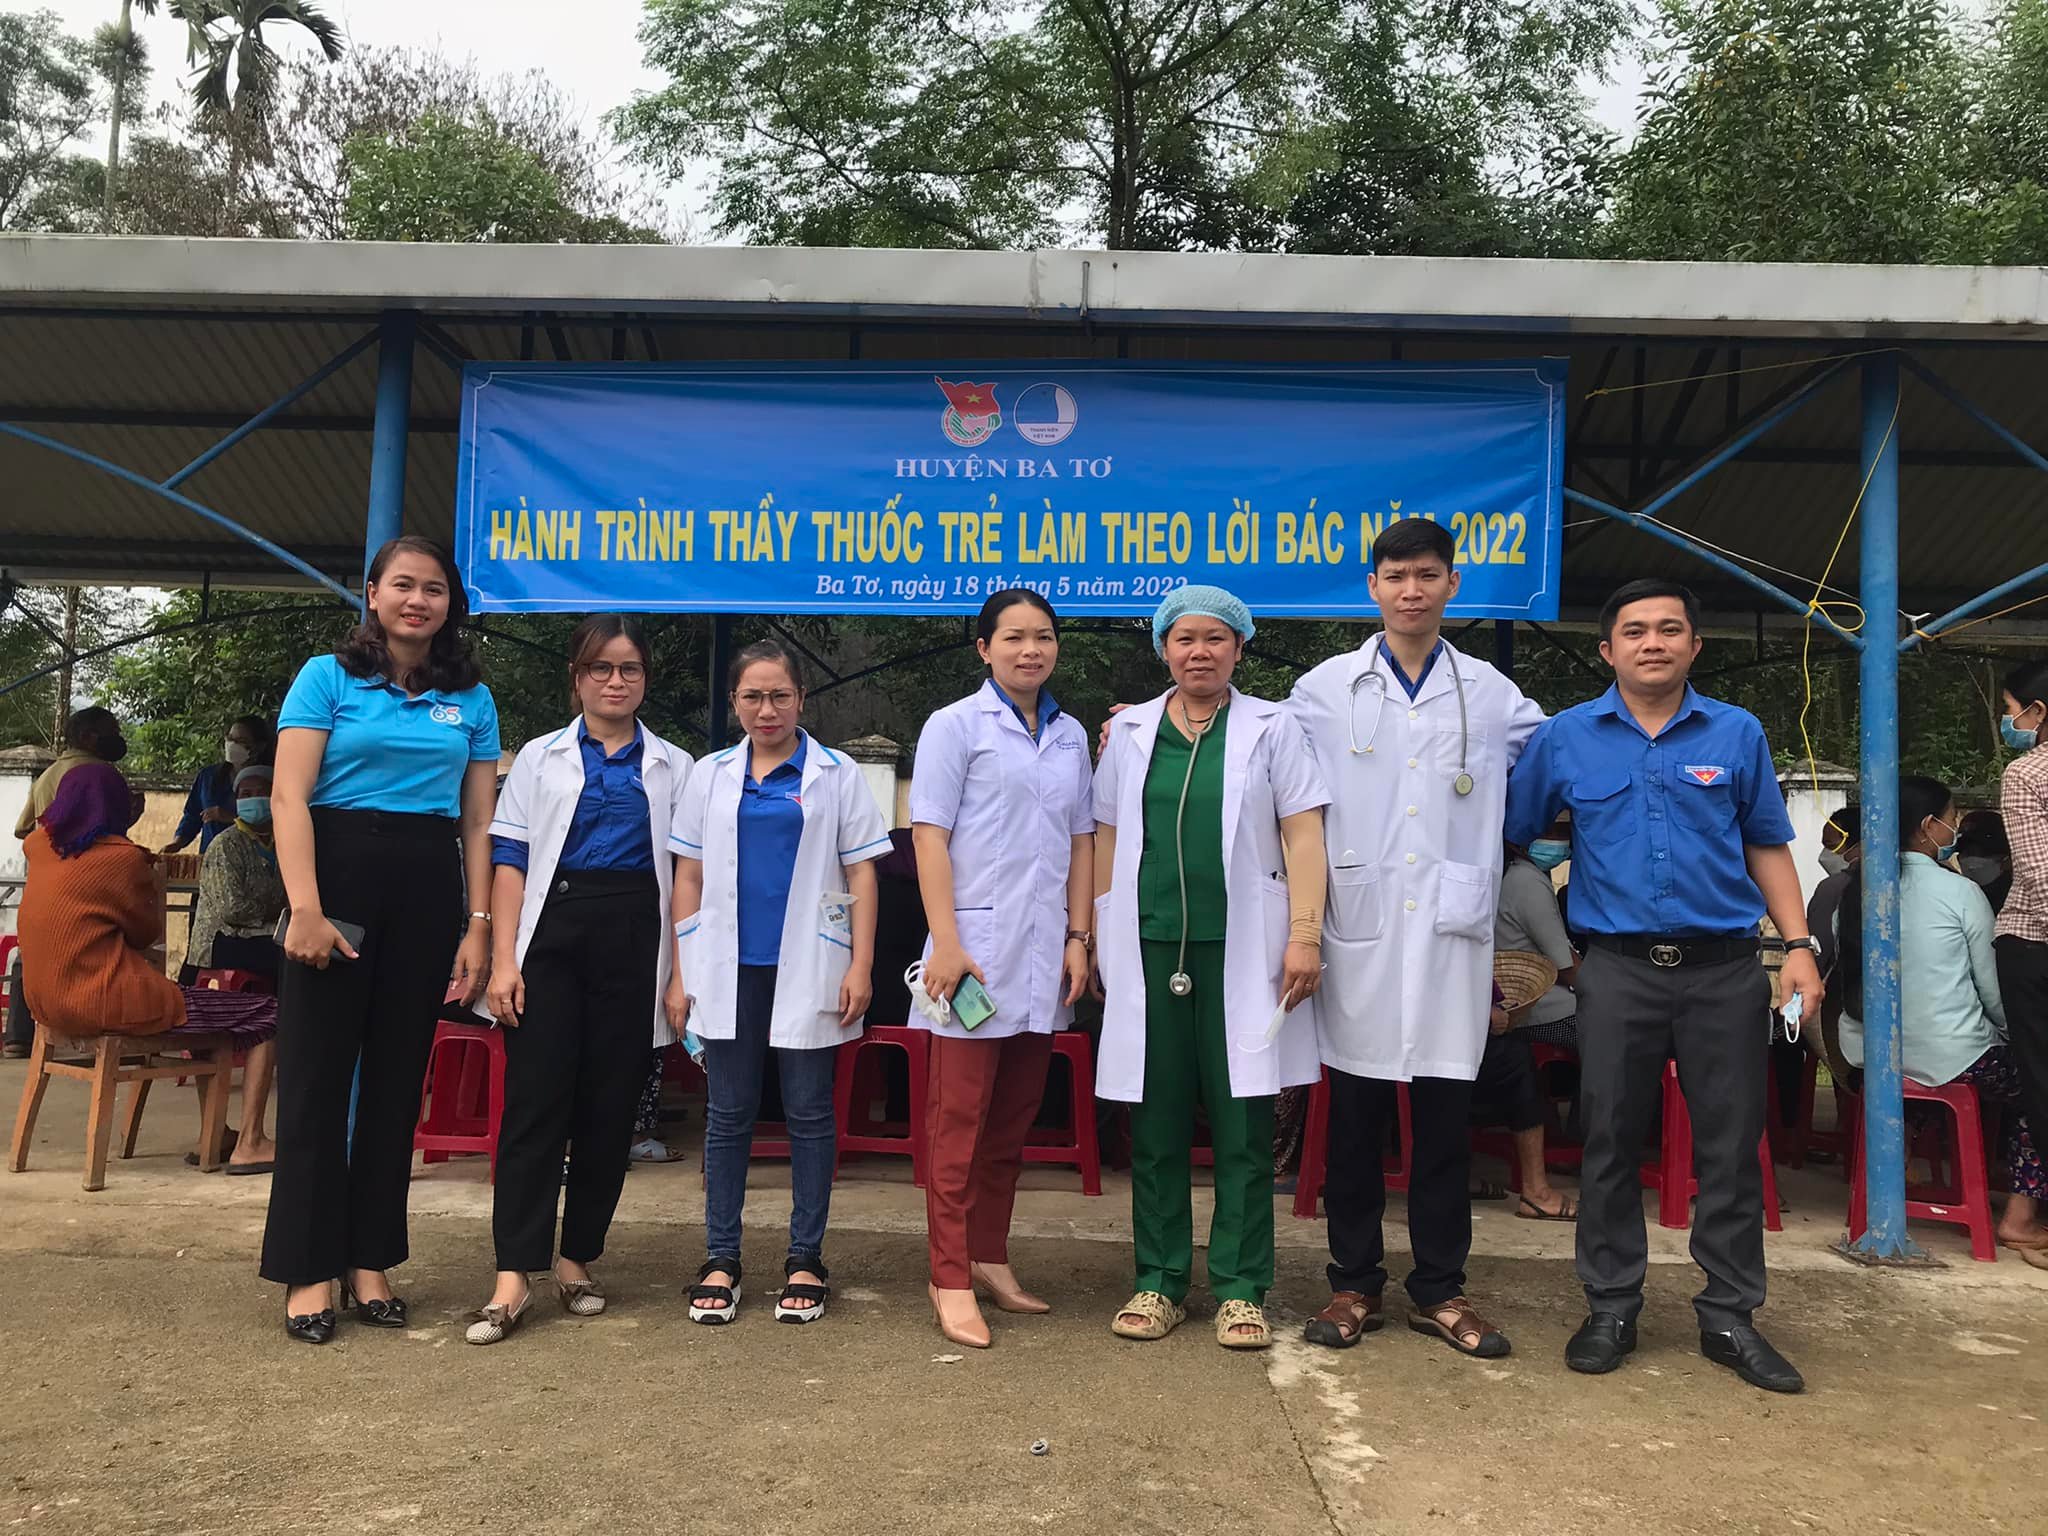 Huyện Đoàn - Hội Liên hiệp Thanh niên Việt Nam huyện Ba Tơ tổ chức Hành trình thầy thuốc trẻ làm theo lời Bác năm 2022